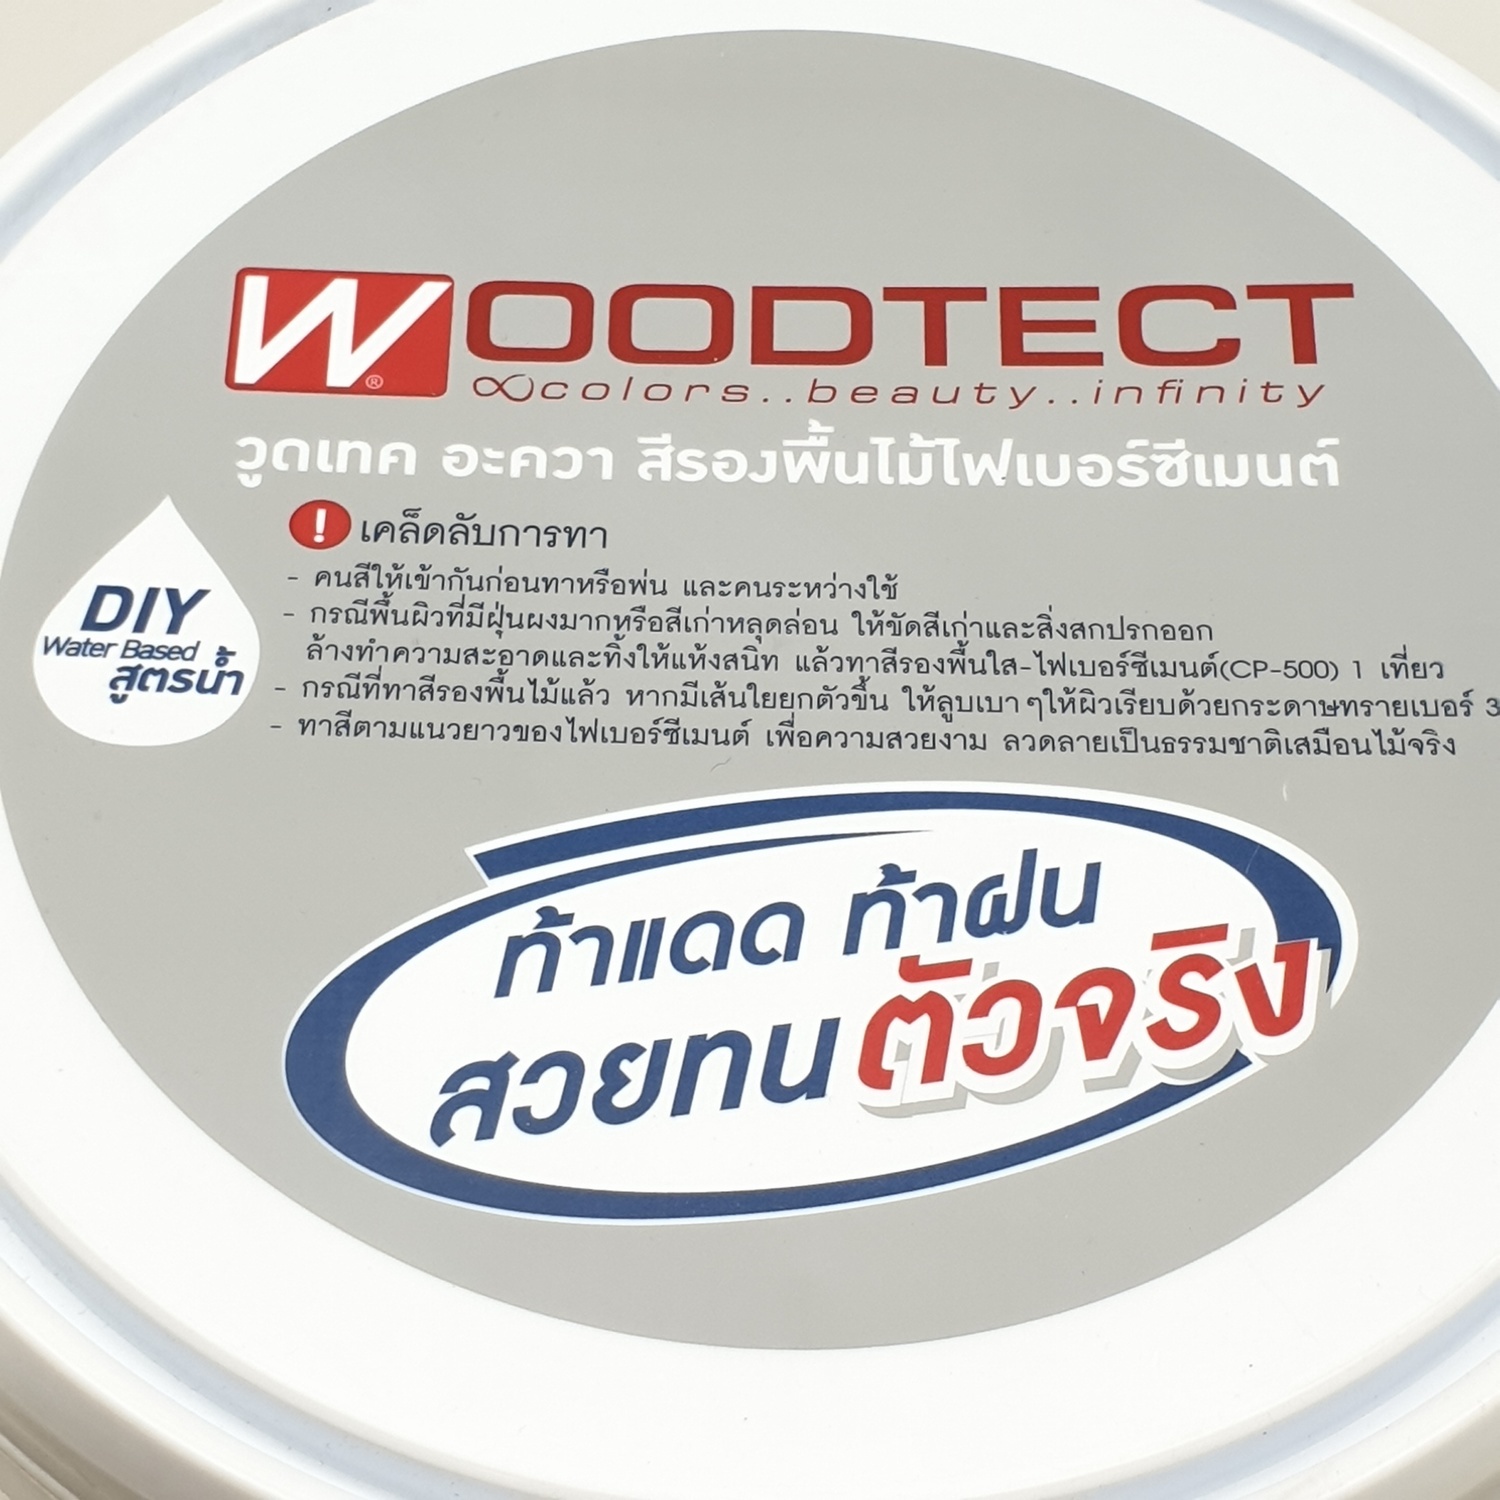 Woodtect วูดเทค ไม้ฝา FP-301 1 กล. สีเทา